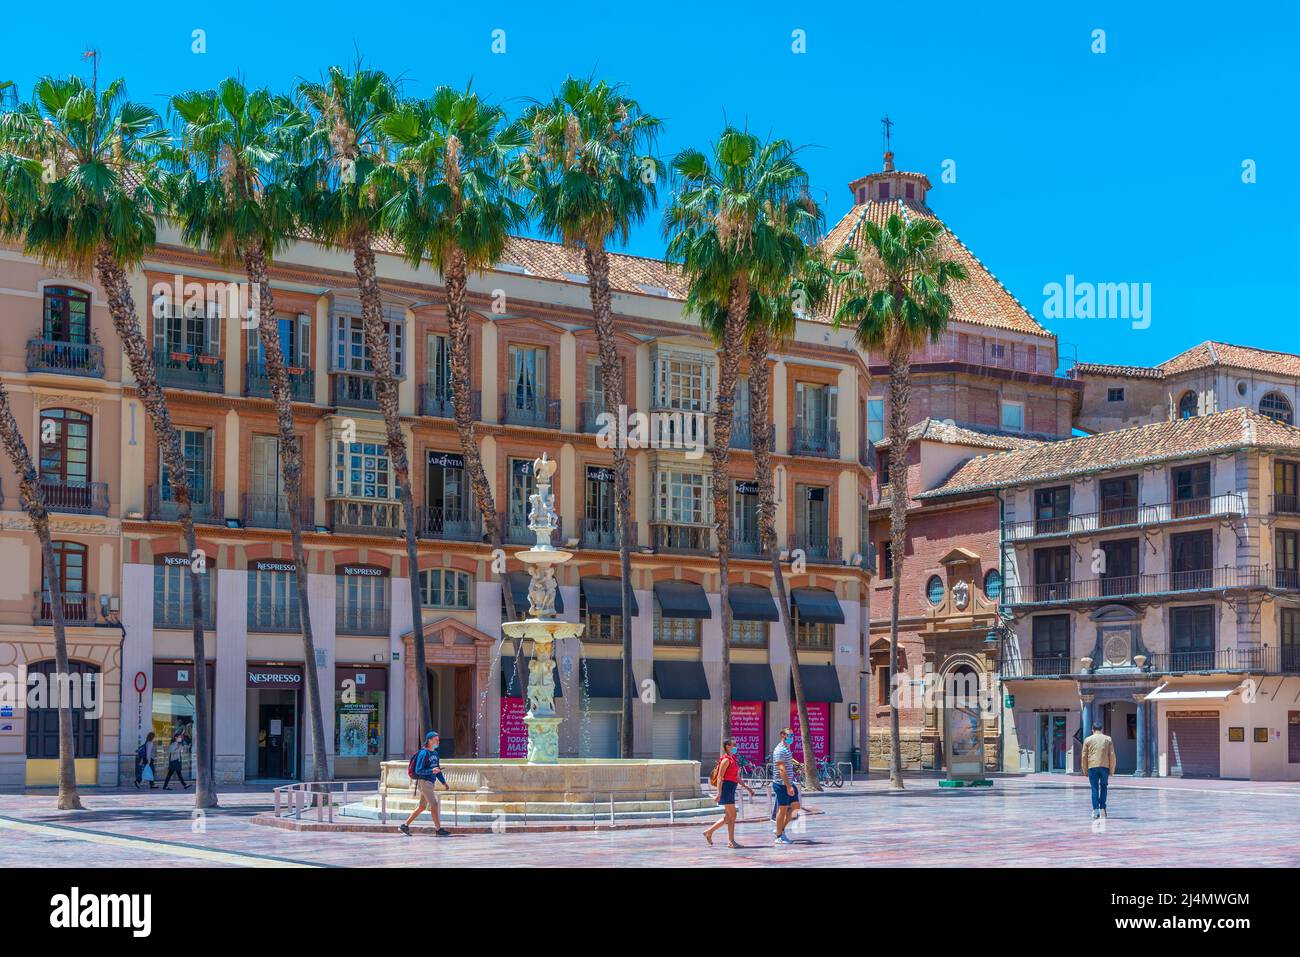 Malaga, Spanien, 24. Mai 2021: Plaza de la Constitucion in der spanischen Stadt Malaga Stockfoto